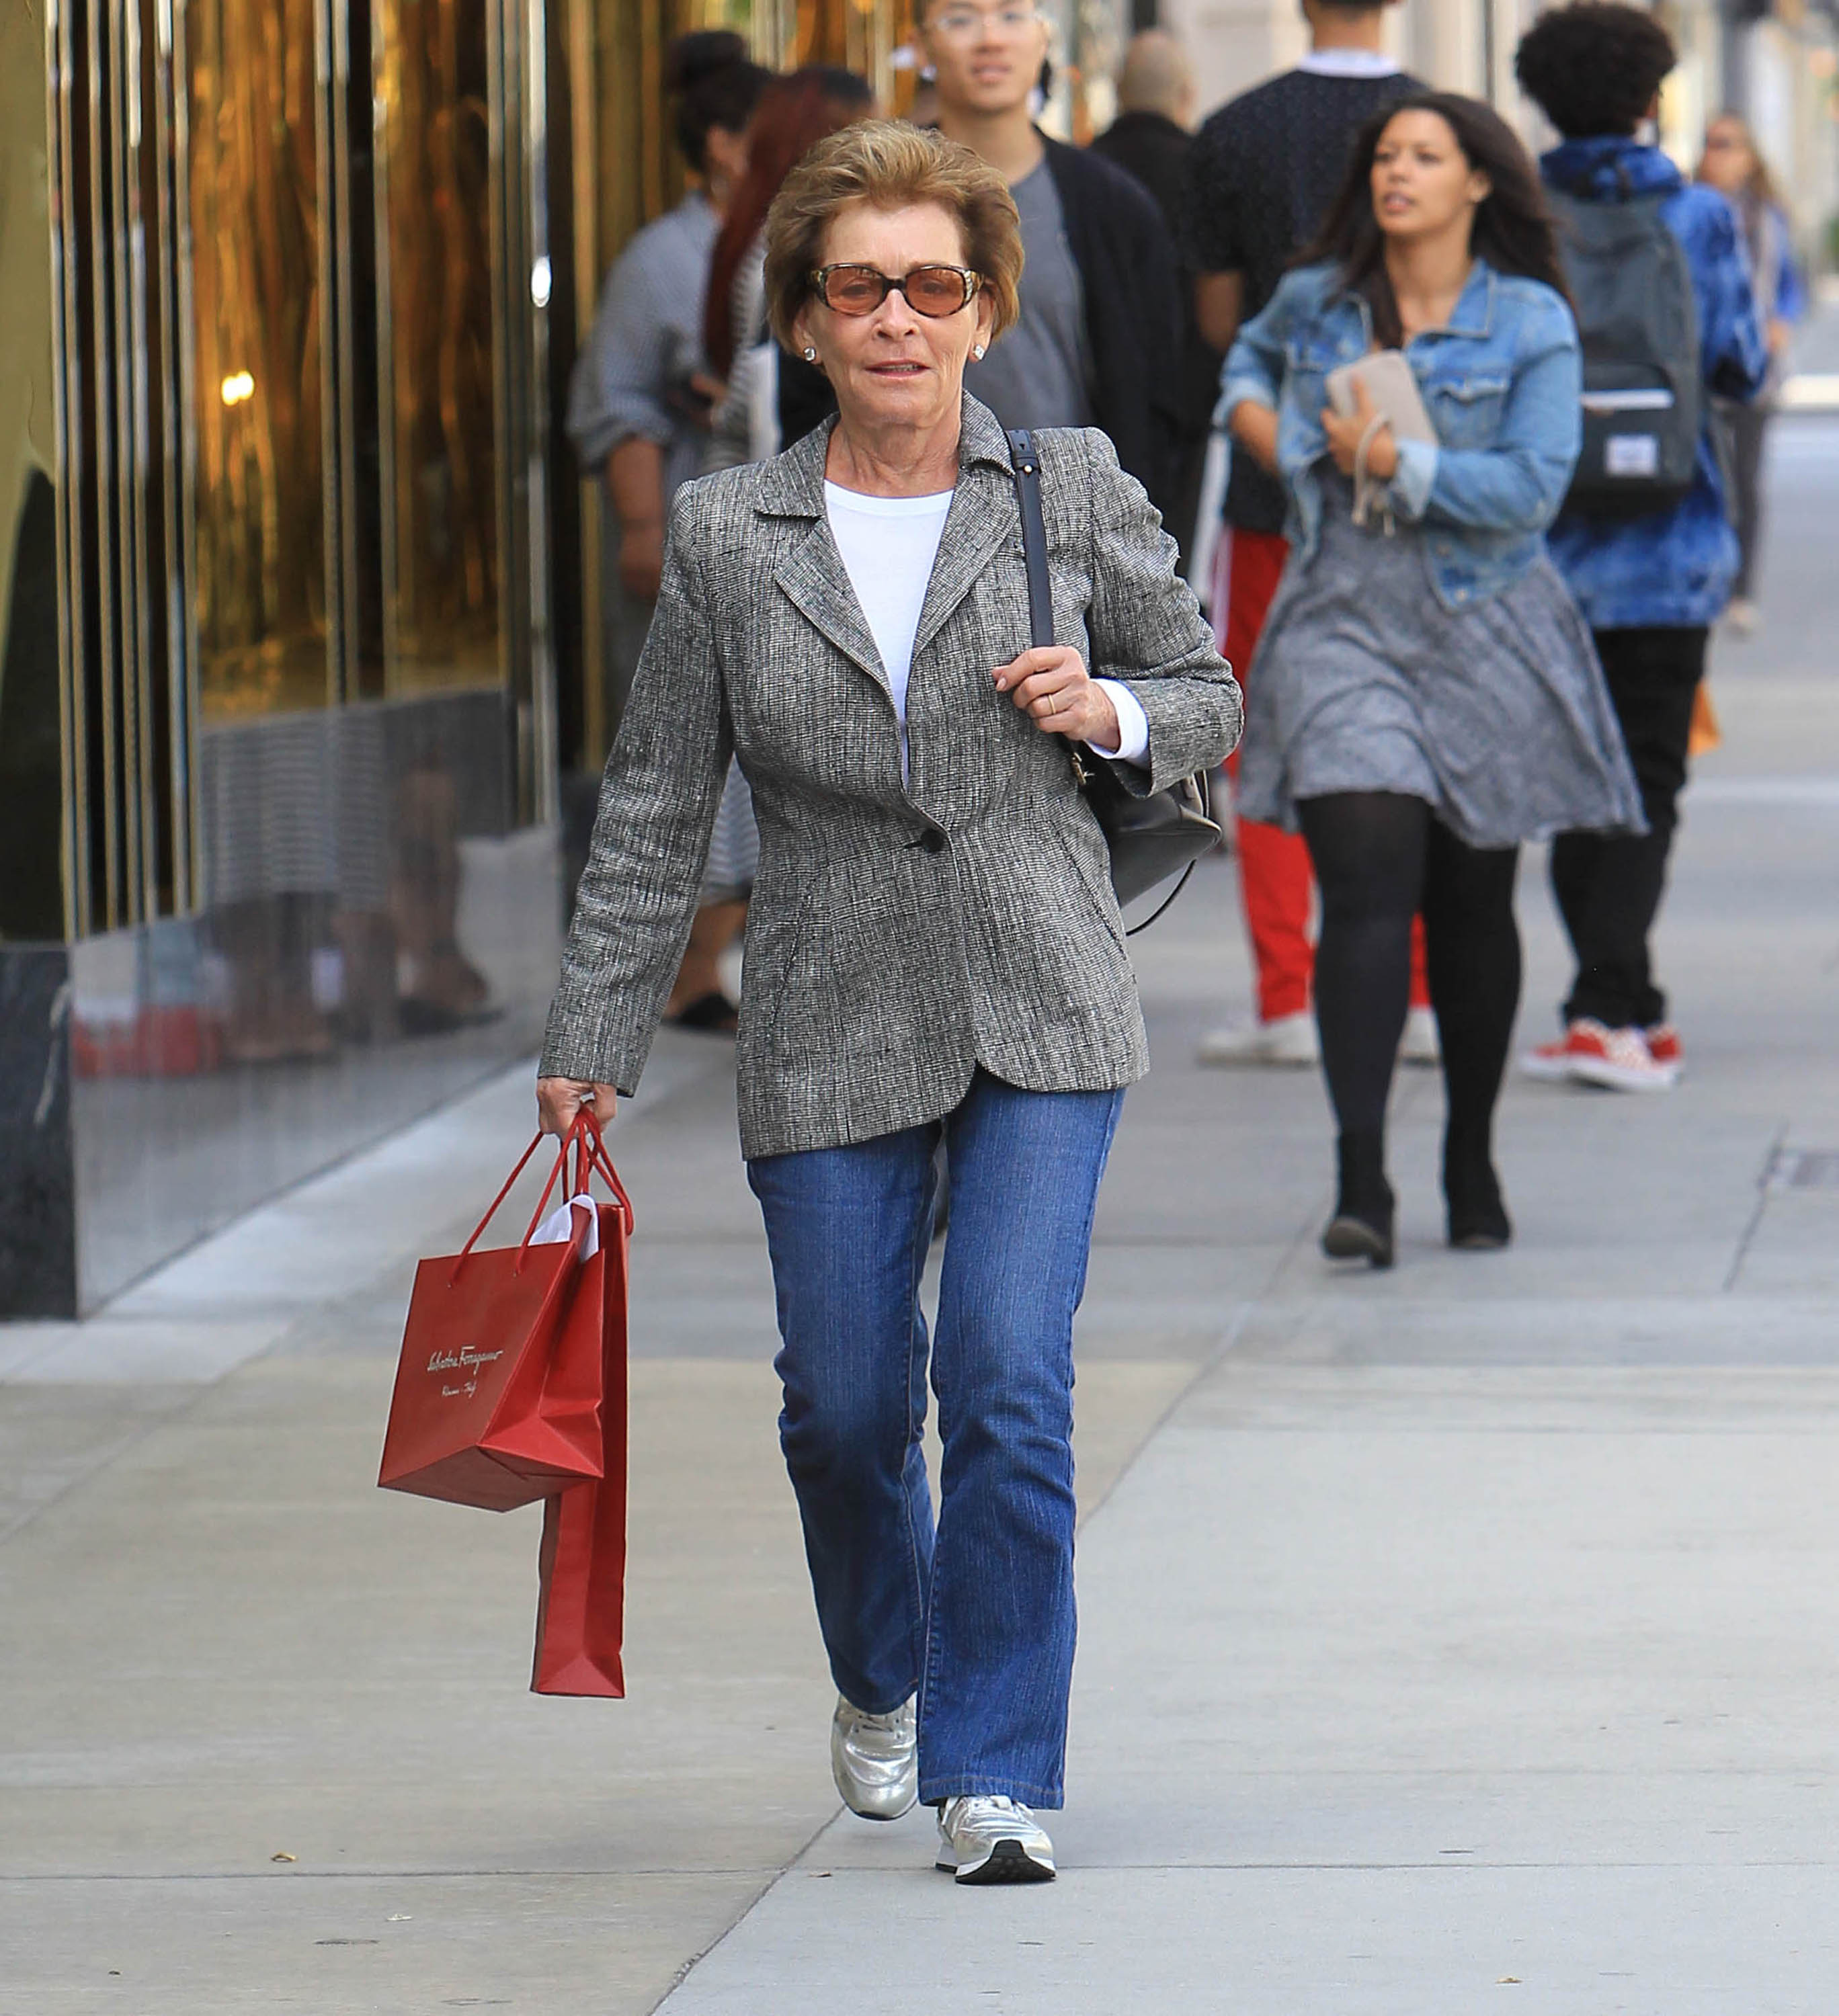 La jueza Judy paseando por Los Ángeles en 2018 | Fuente: Getty Images